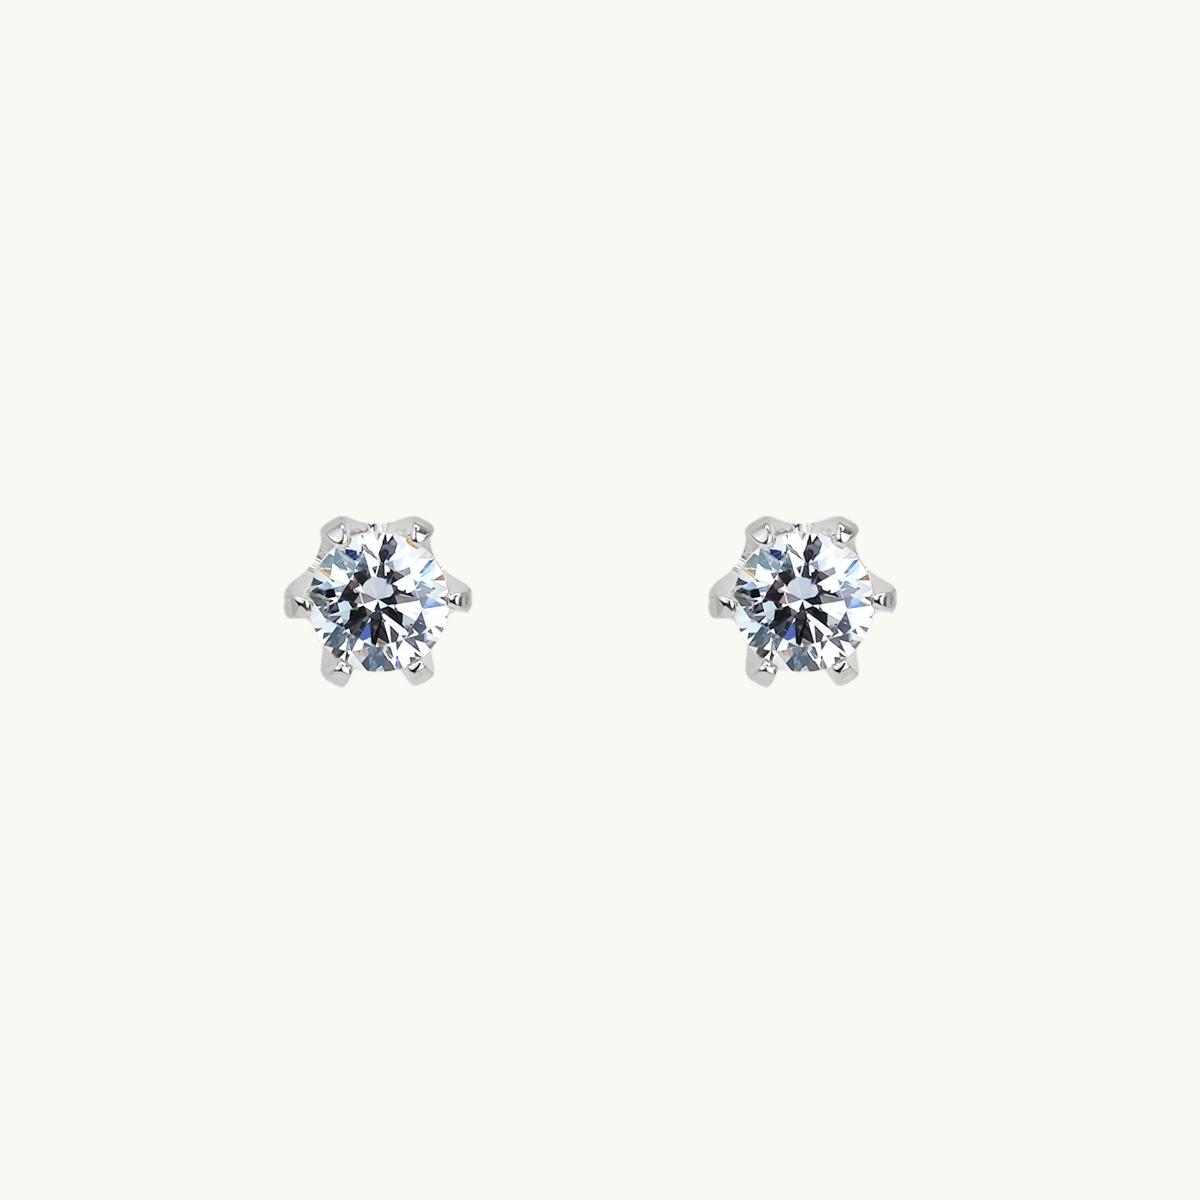 Pin earrings, silver, diamond in claw, princess